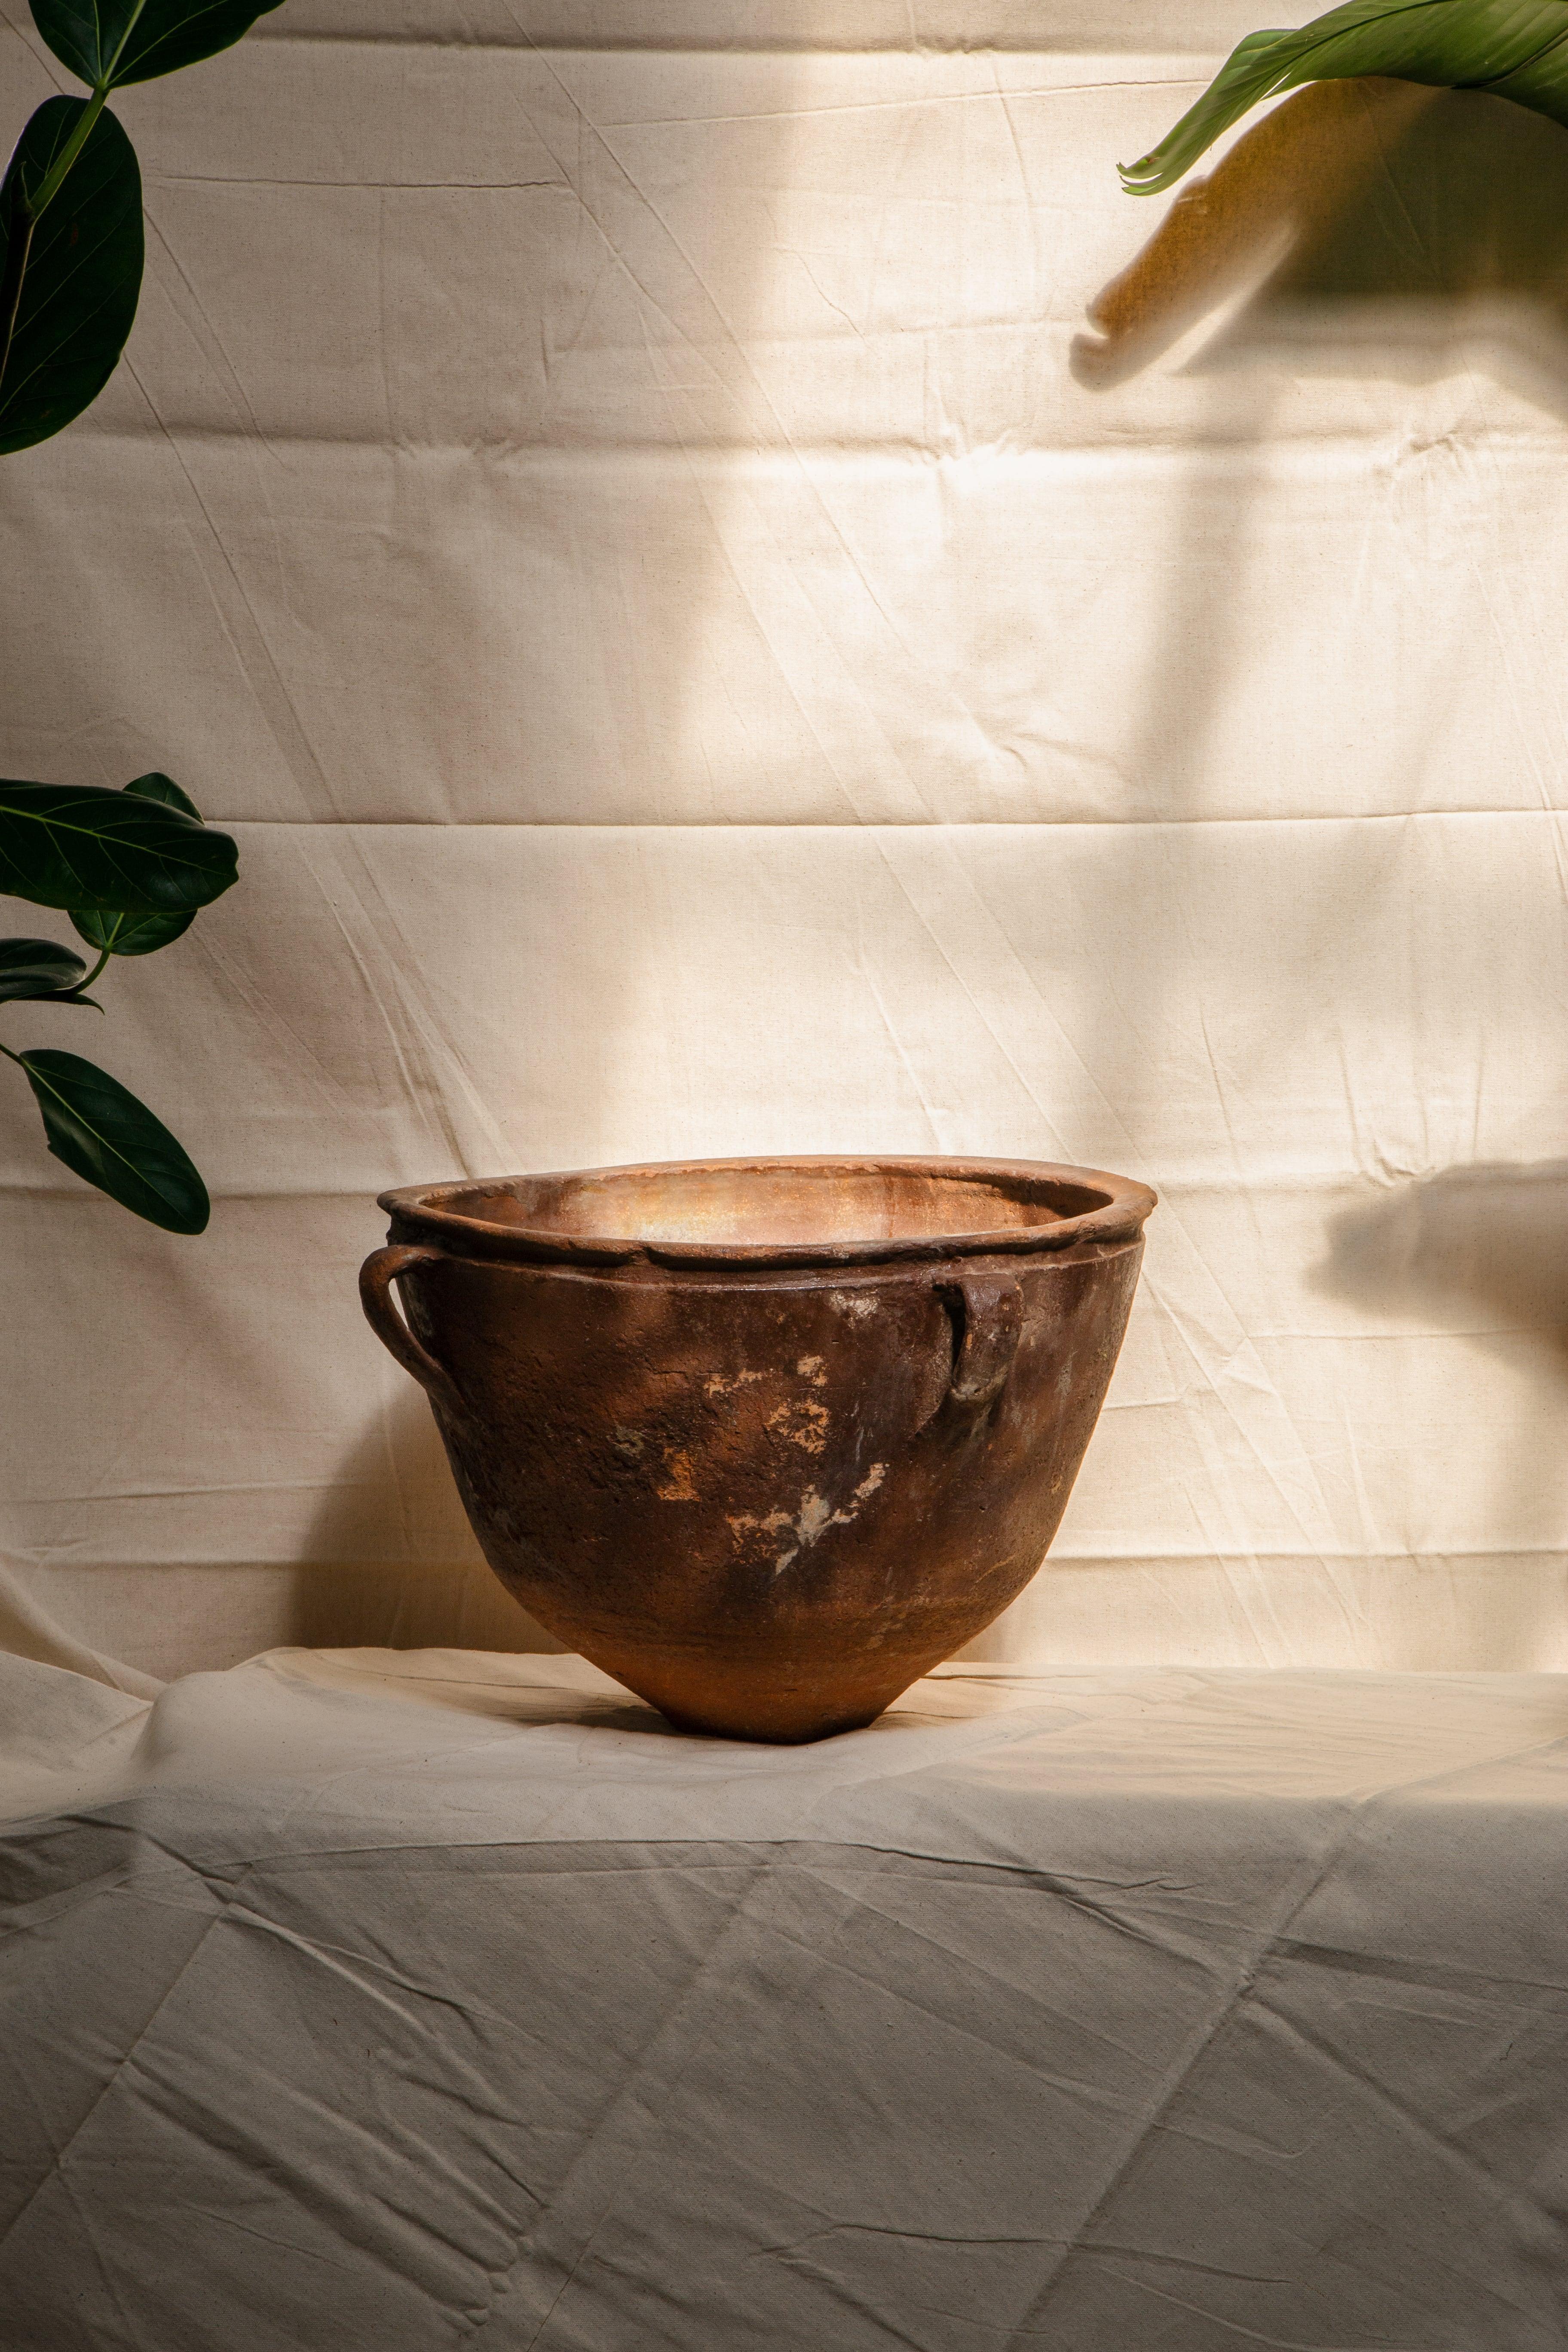 Das Antique Artisan Clay Vessel ist ein bemerkenswertes Gefäß, das tiefe, erdige Töne mit einem Hauch von Geheimnis verbindet. Dieses mit exquisiter Kunstfertigkeit gefertigte Gefäß verkörpert die Essenz antiker Töpferkunst und strahlt einen tiefen